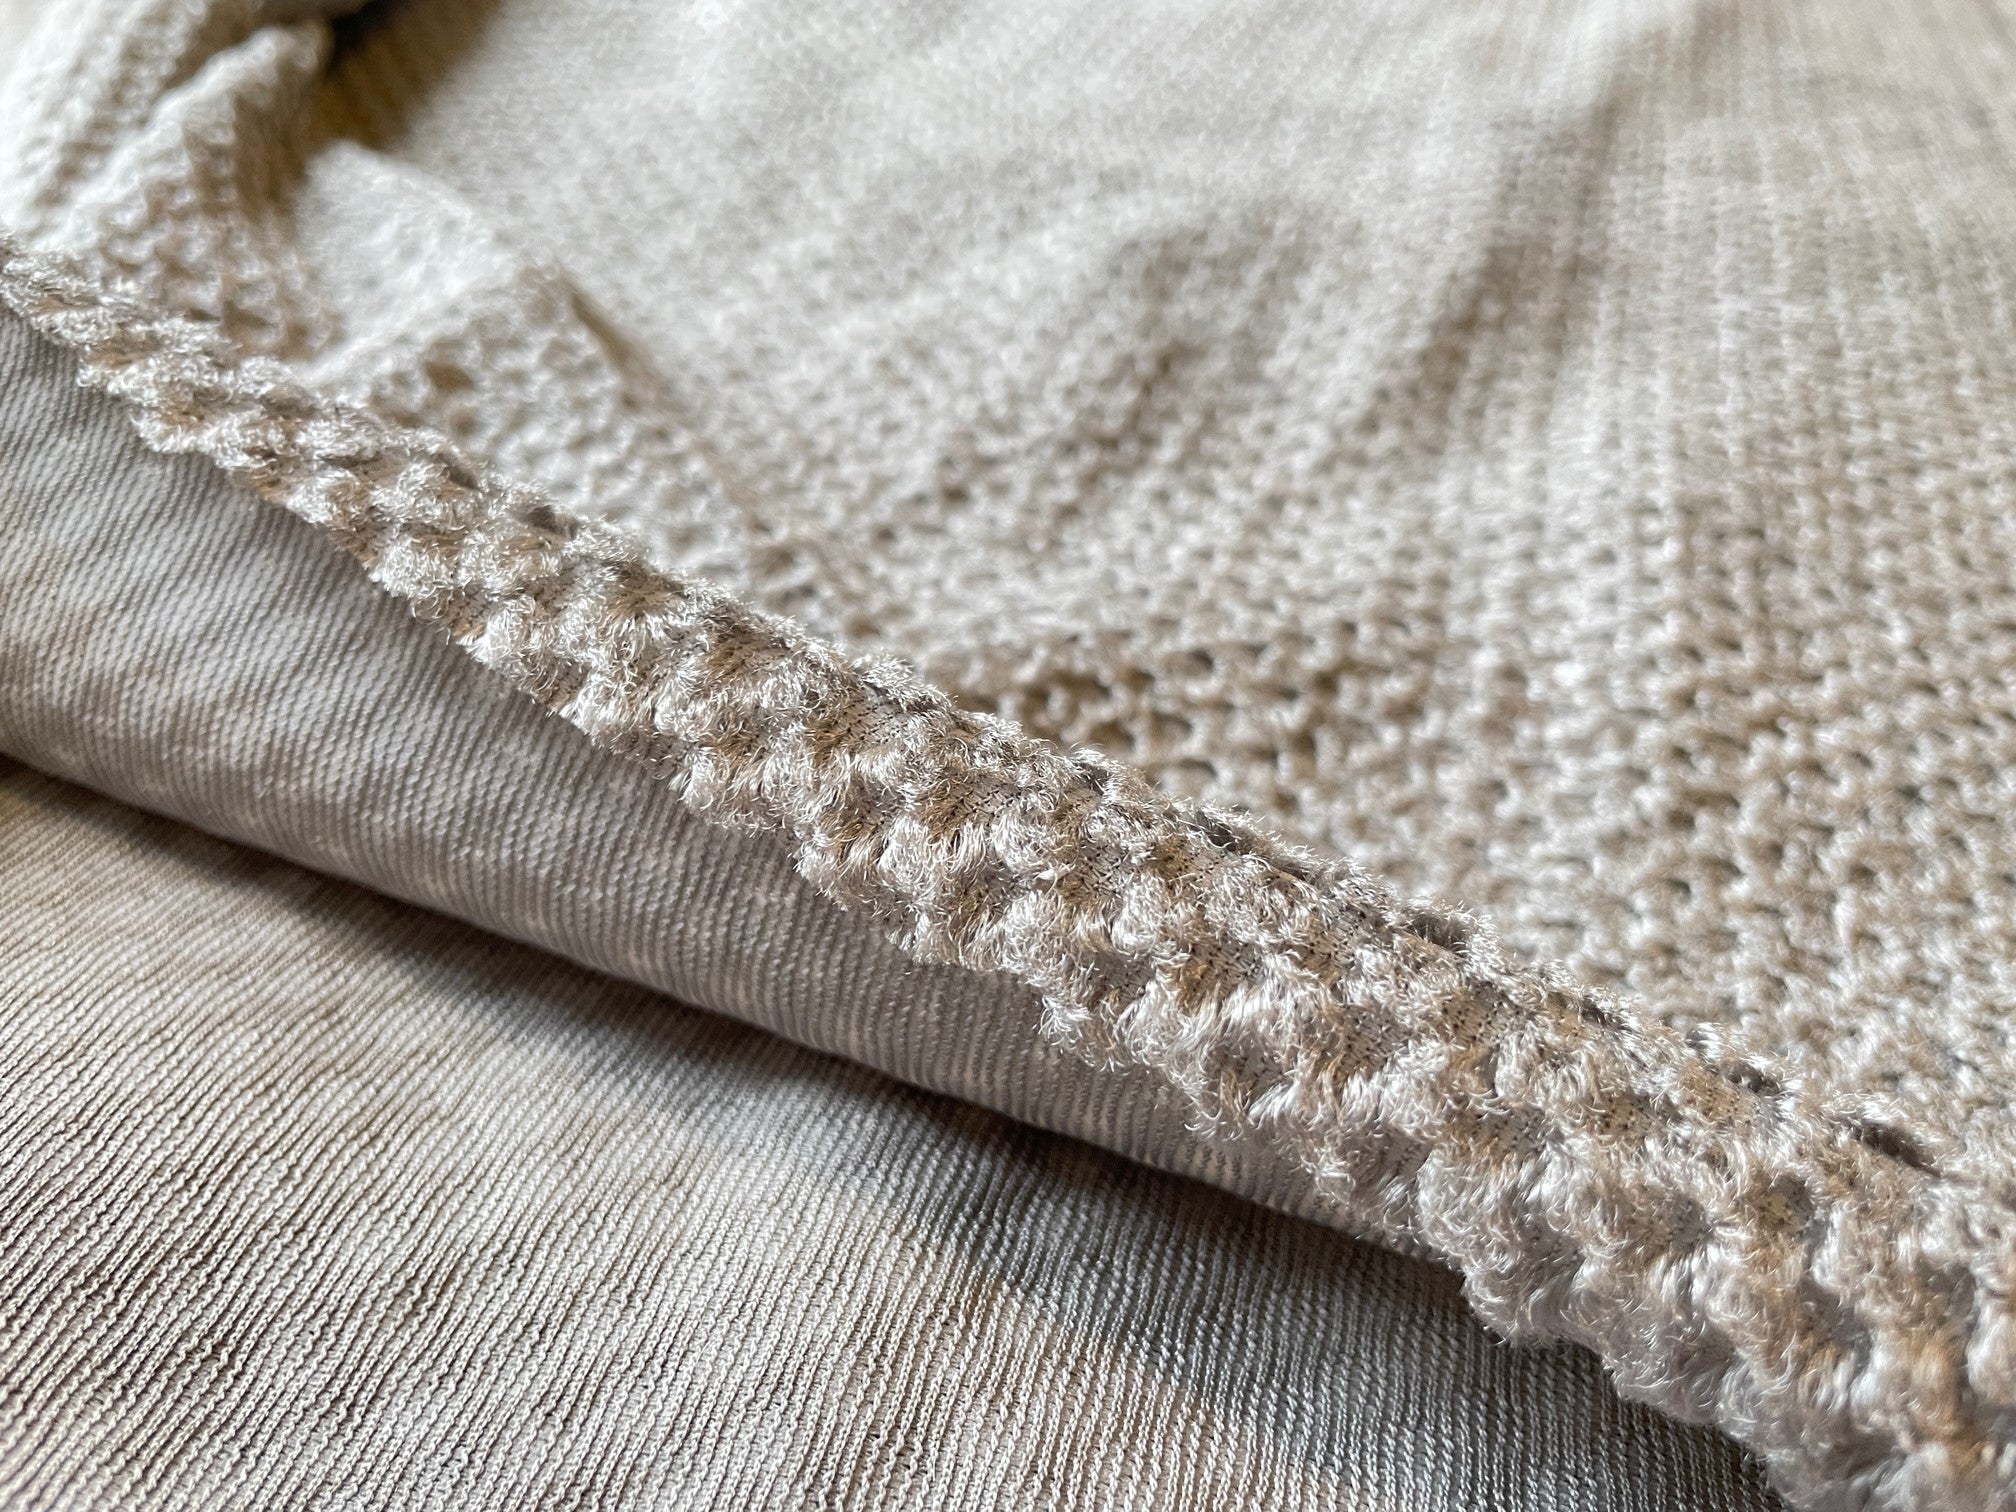 OCTA® Fabrics – THINKECO FABRICS by Teijin Frontier USA